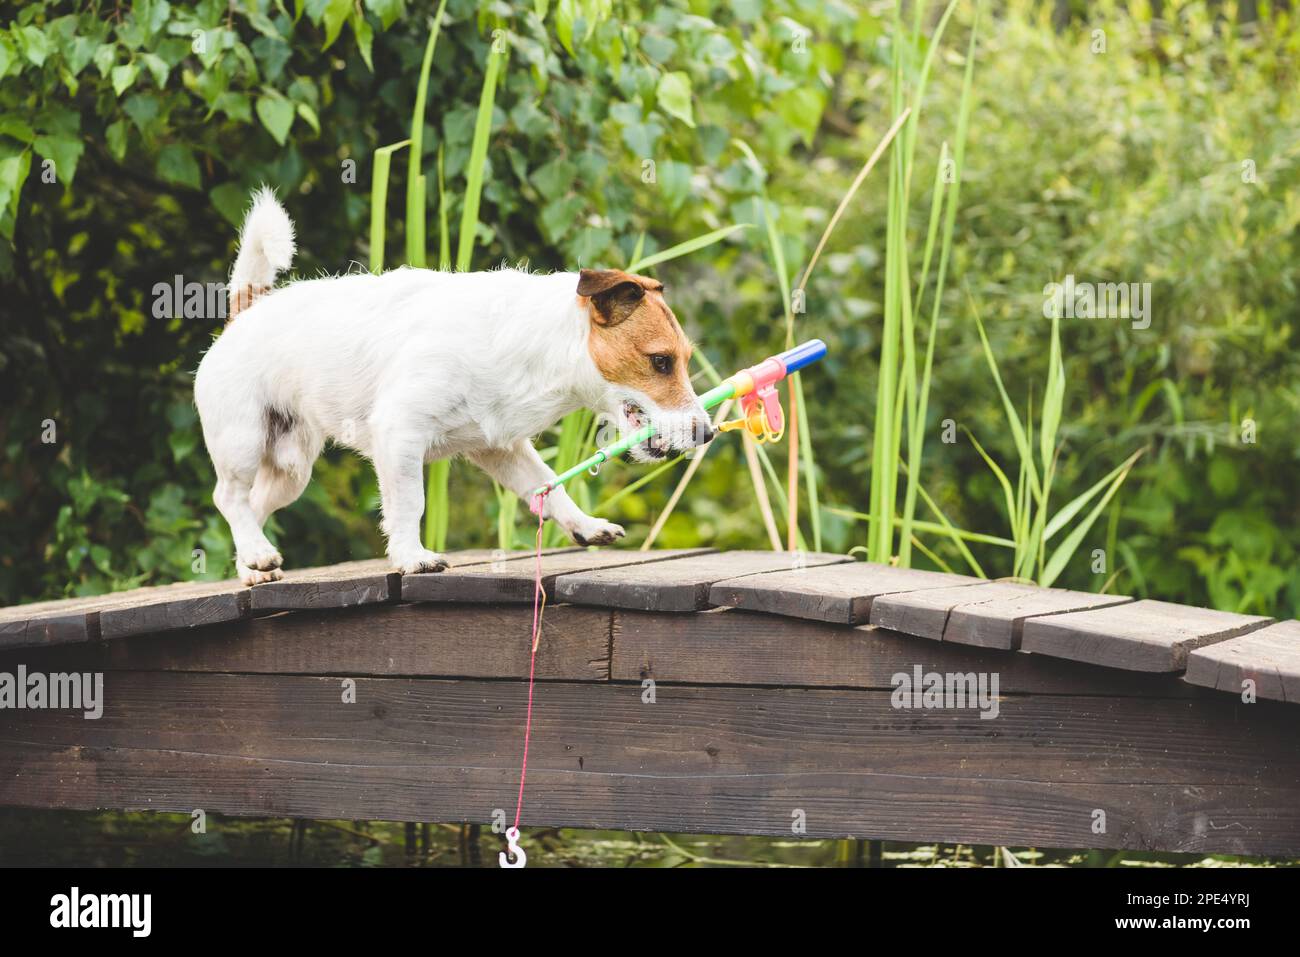 Hund als lustiger Fischer mit Angelrute, der Fische fangen will. Humorbegriff des Fischens als Hobby Stockfoto